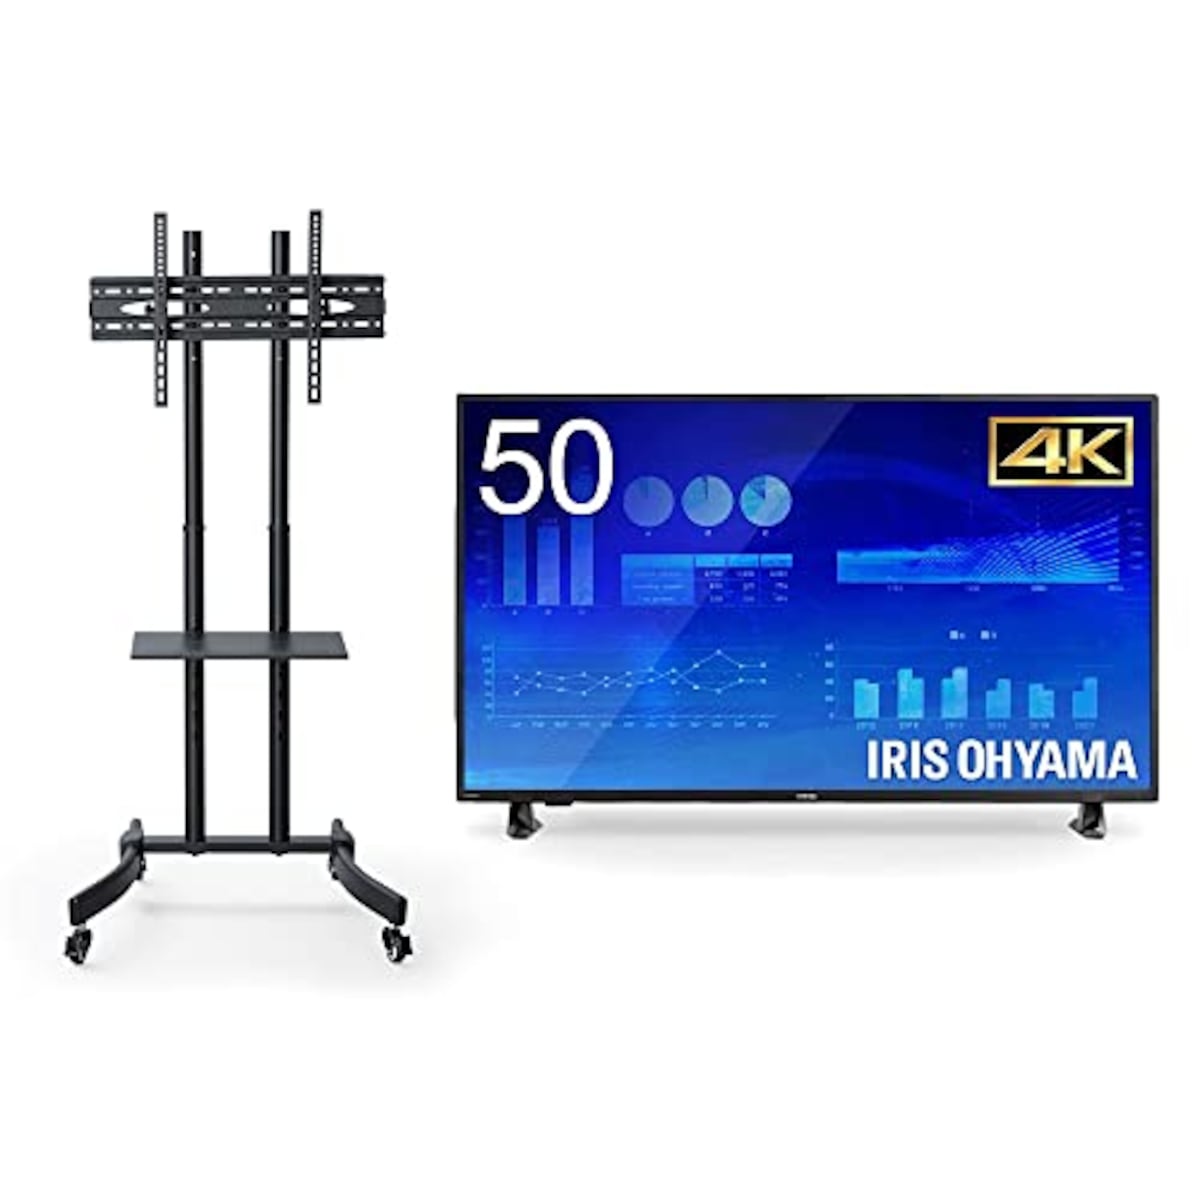 【セット買い】アイリスオーヤマ モニター 50型 4K 大型ディスプレイ HDMI/USB/RCA端子/S/PDIF ILD-B50UHDS+移動式スタンド UTS-S7517S セット画像